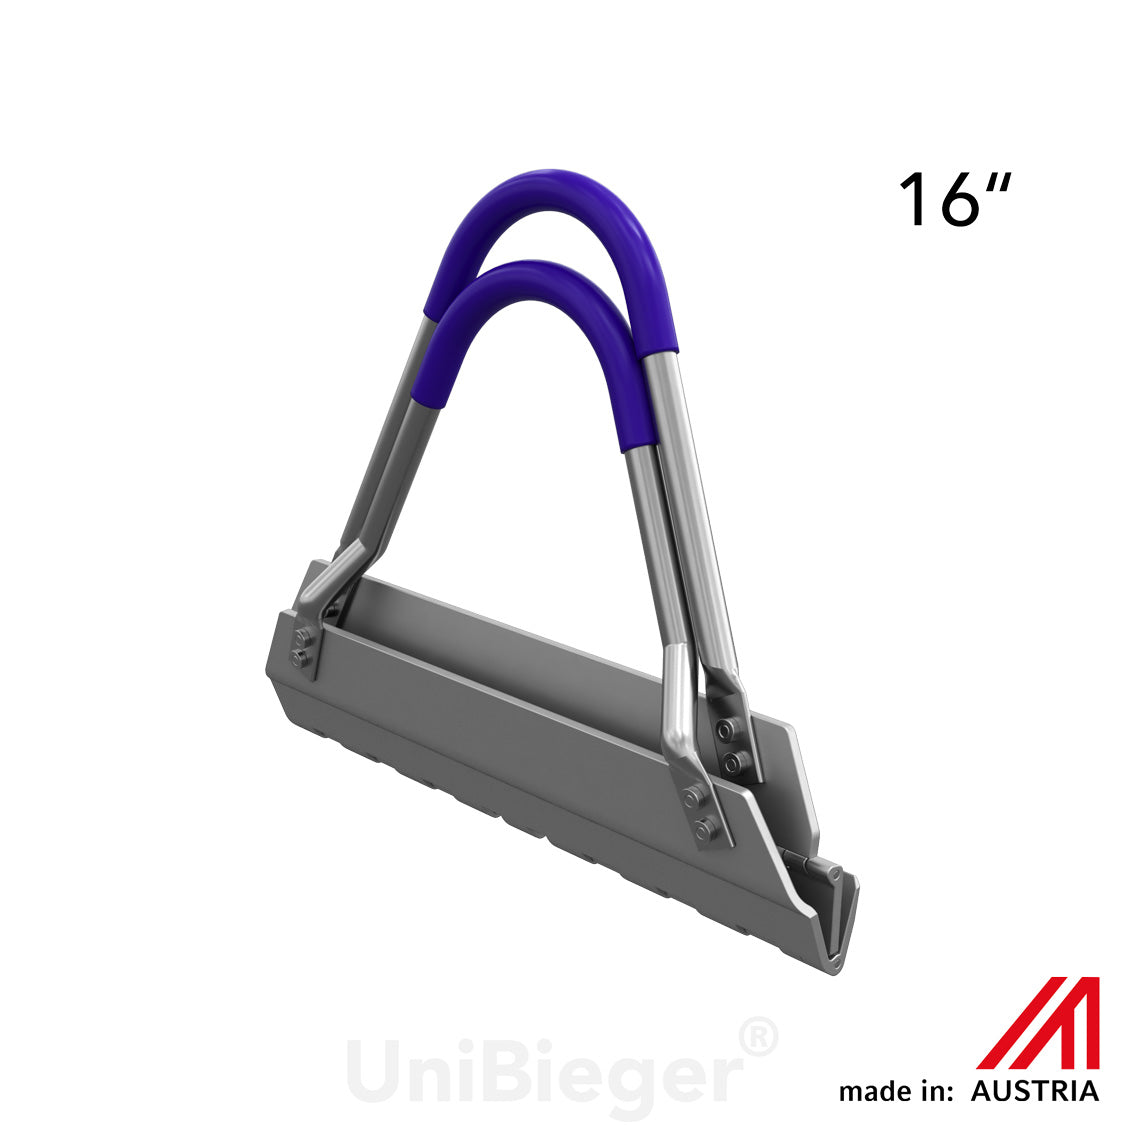 UniBieger® model T inch